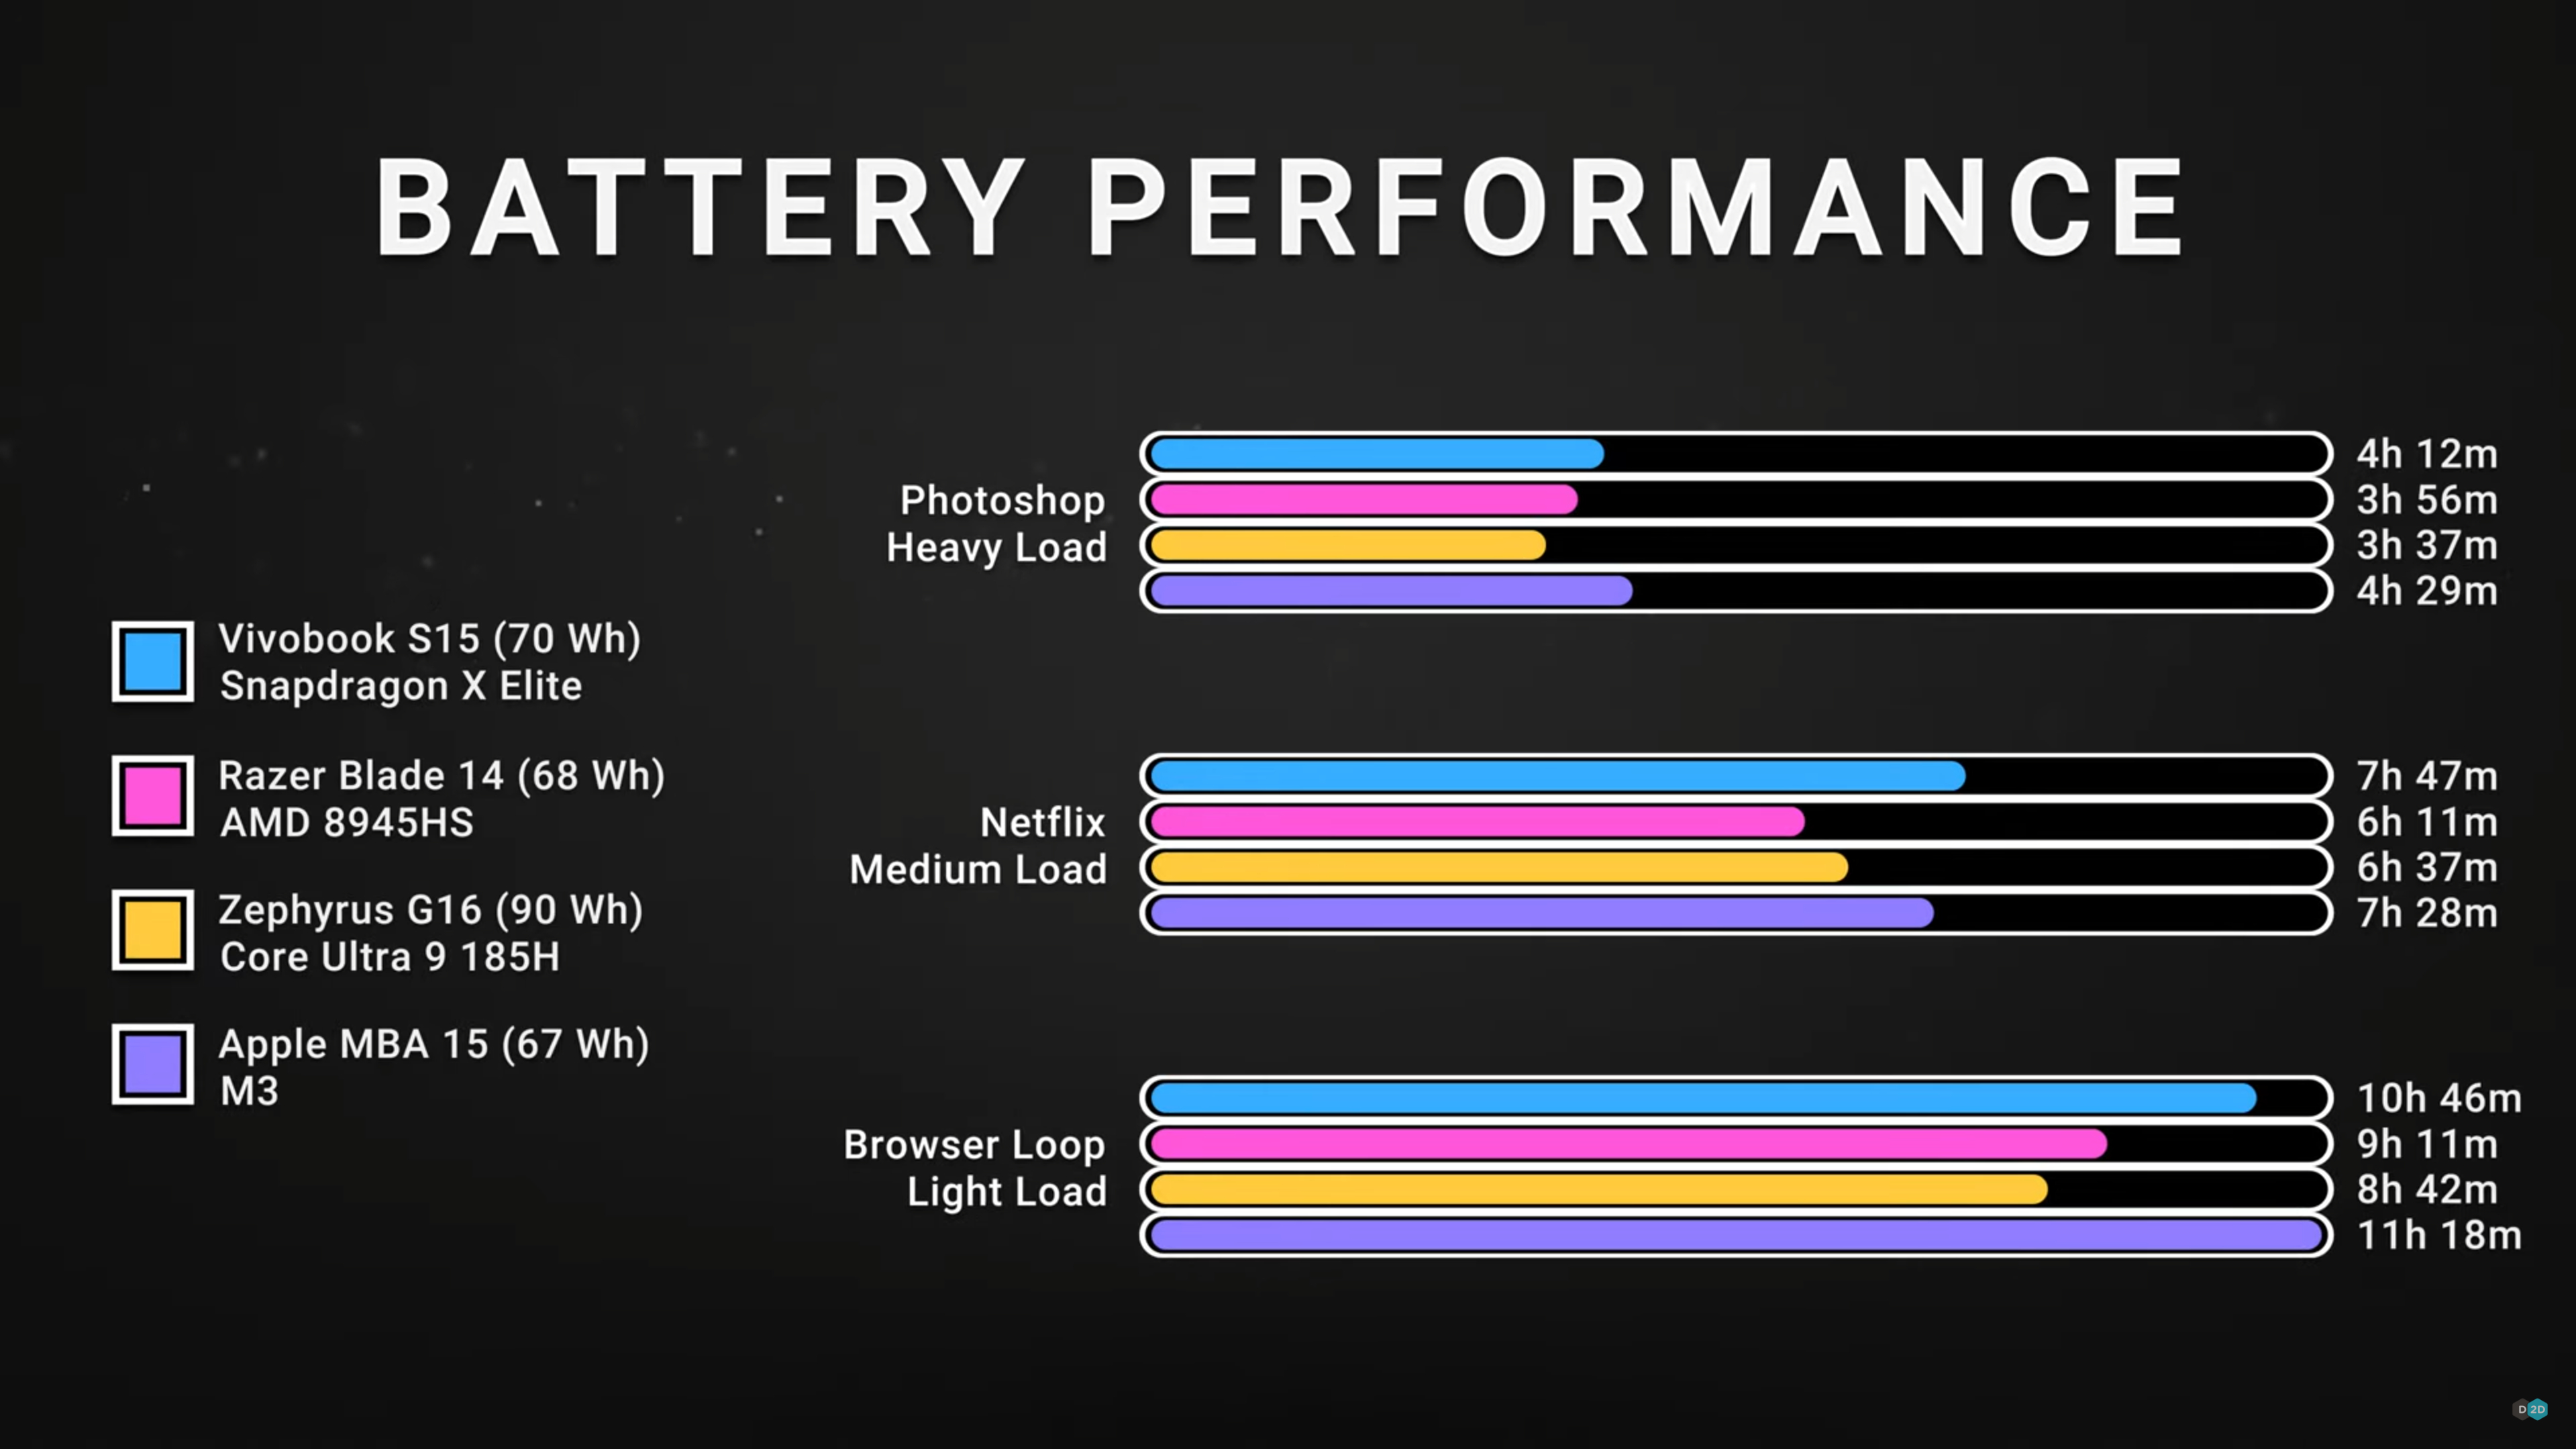 Asus Vivobook S 15 battery life comparison